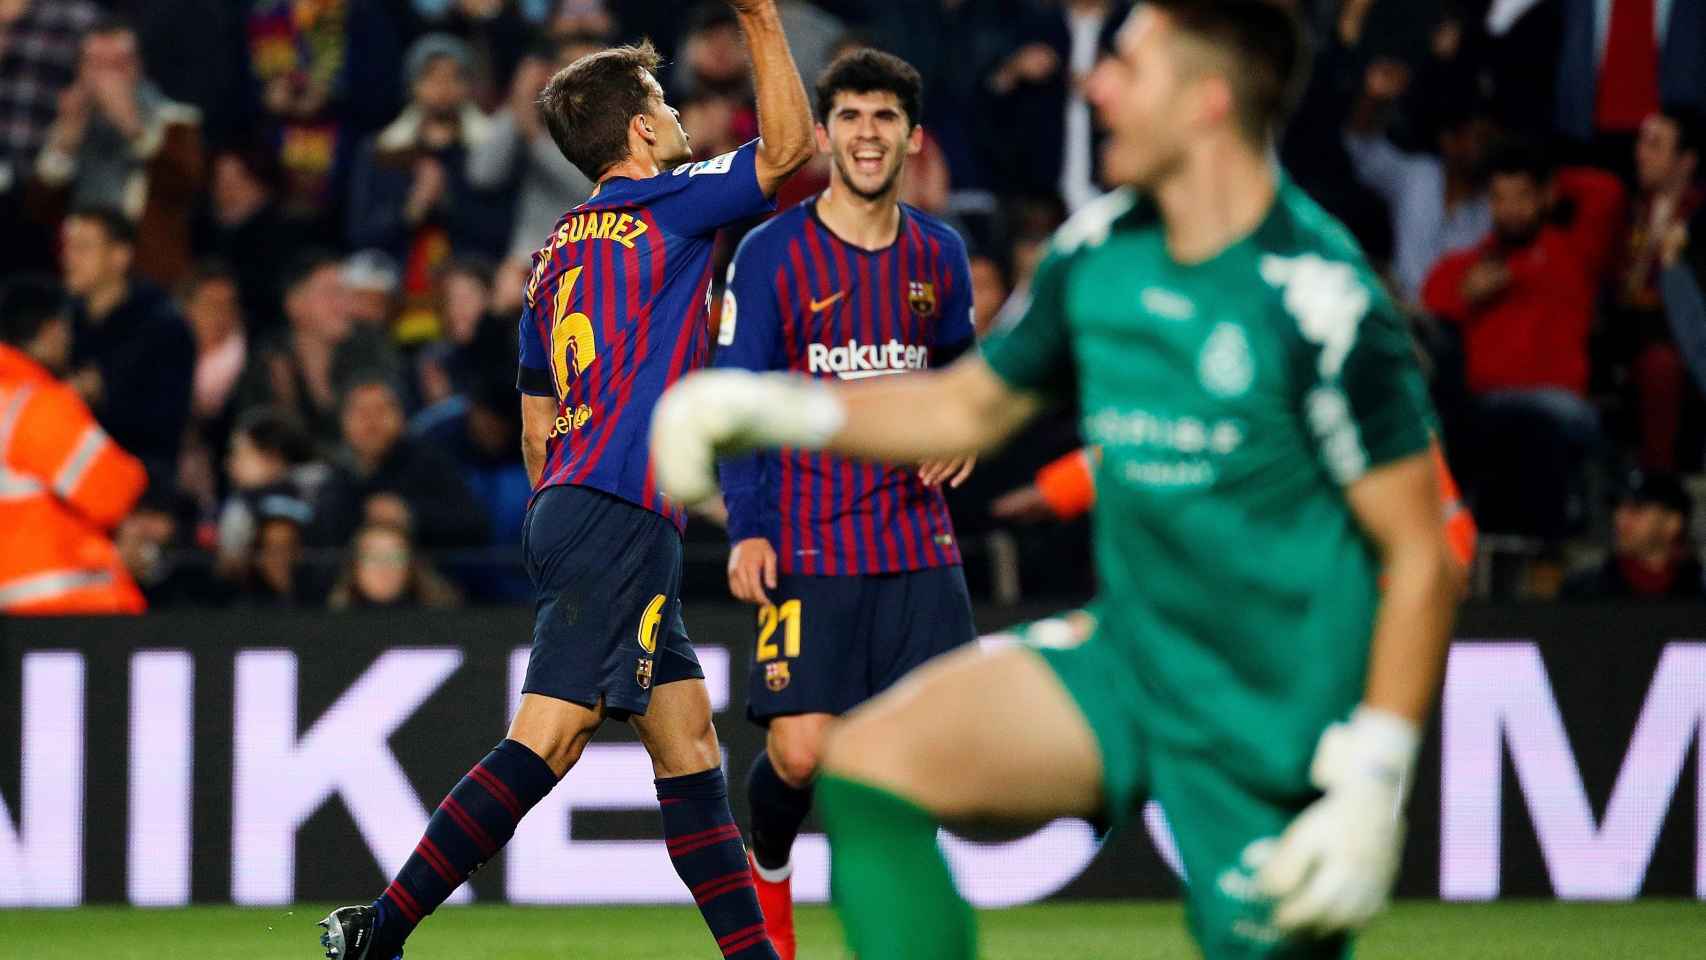 Denis Suárez celebra frente a Carles Aleñá su gol ante la Cultural Leonesa / EFE